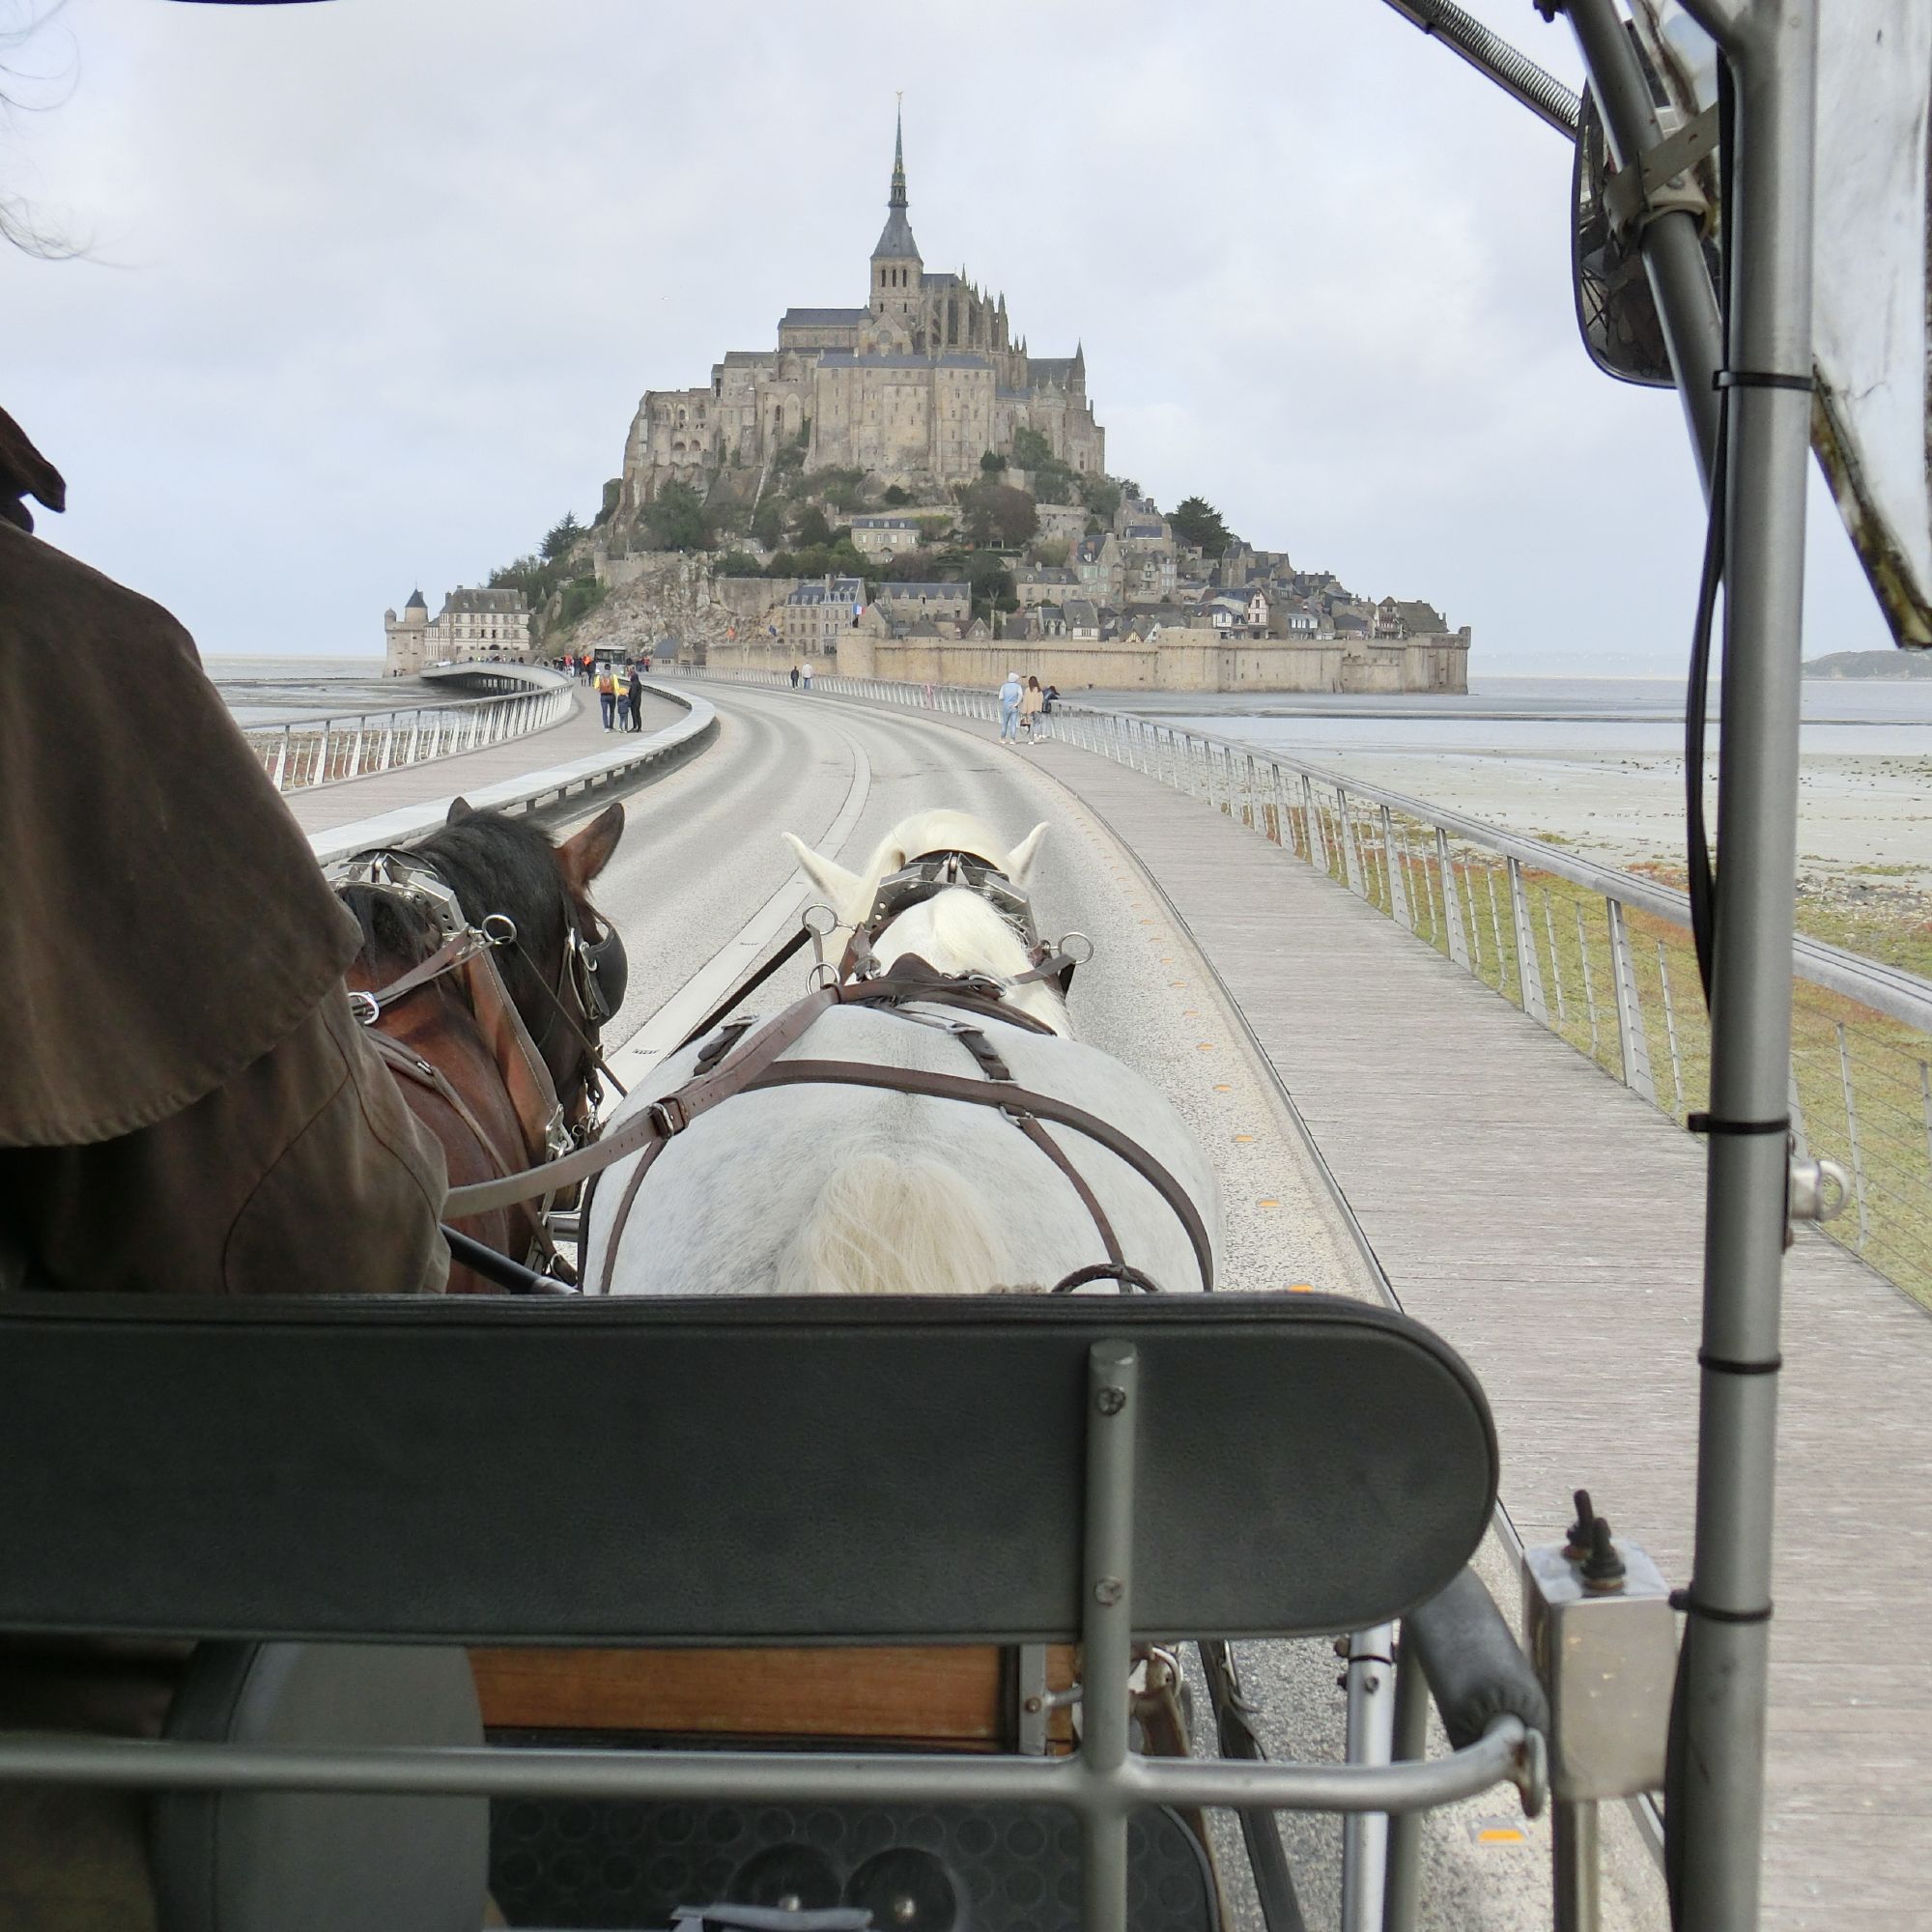 Gemächlichen Schritts ziehen der Schimmel Cesar und sein Kumpel die Kutsche mit den Besuchern über die Brücke – dem beeindruckenden Mont-Saint-Michel vor der Küste Frankreichs entgegen.